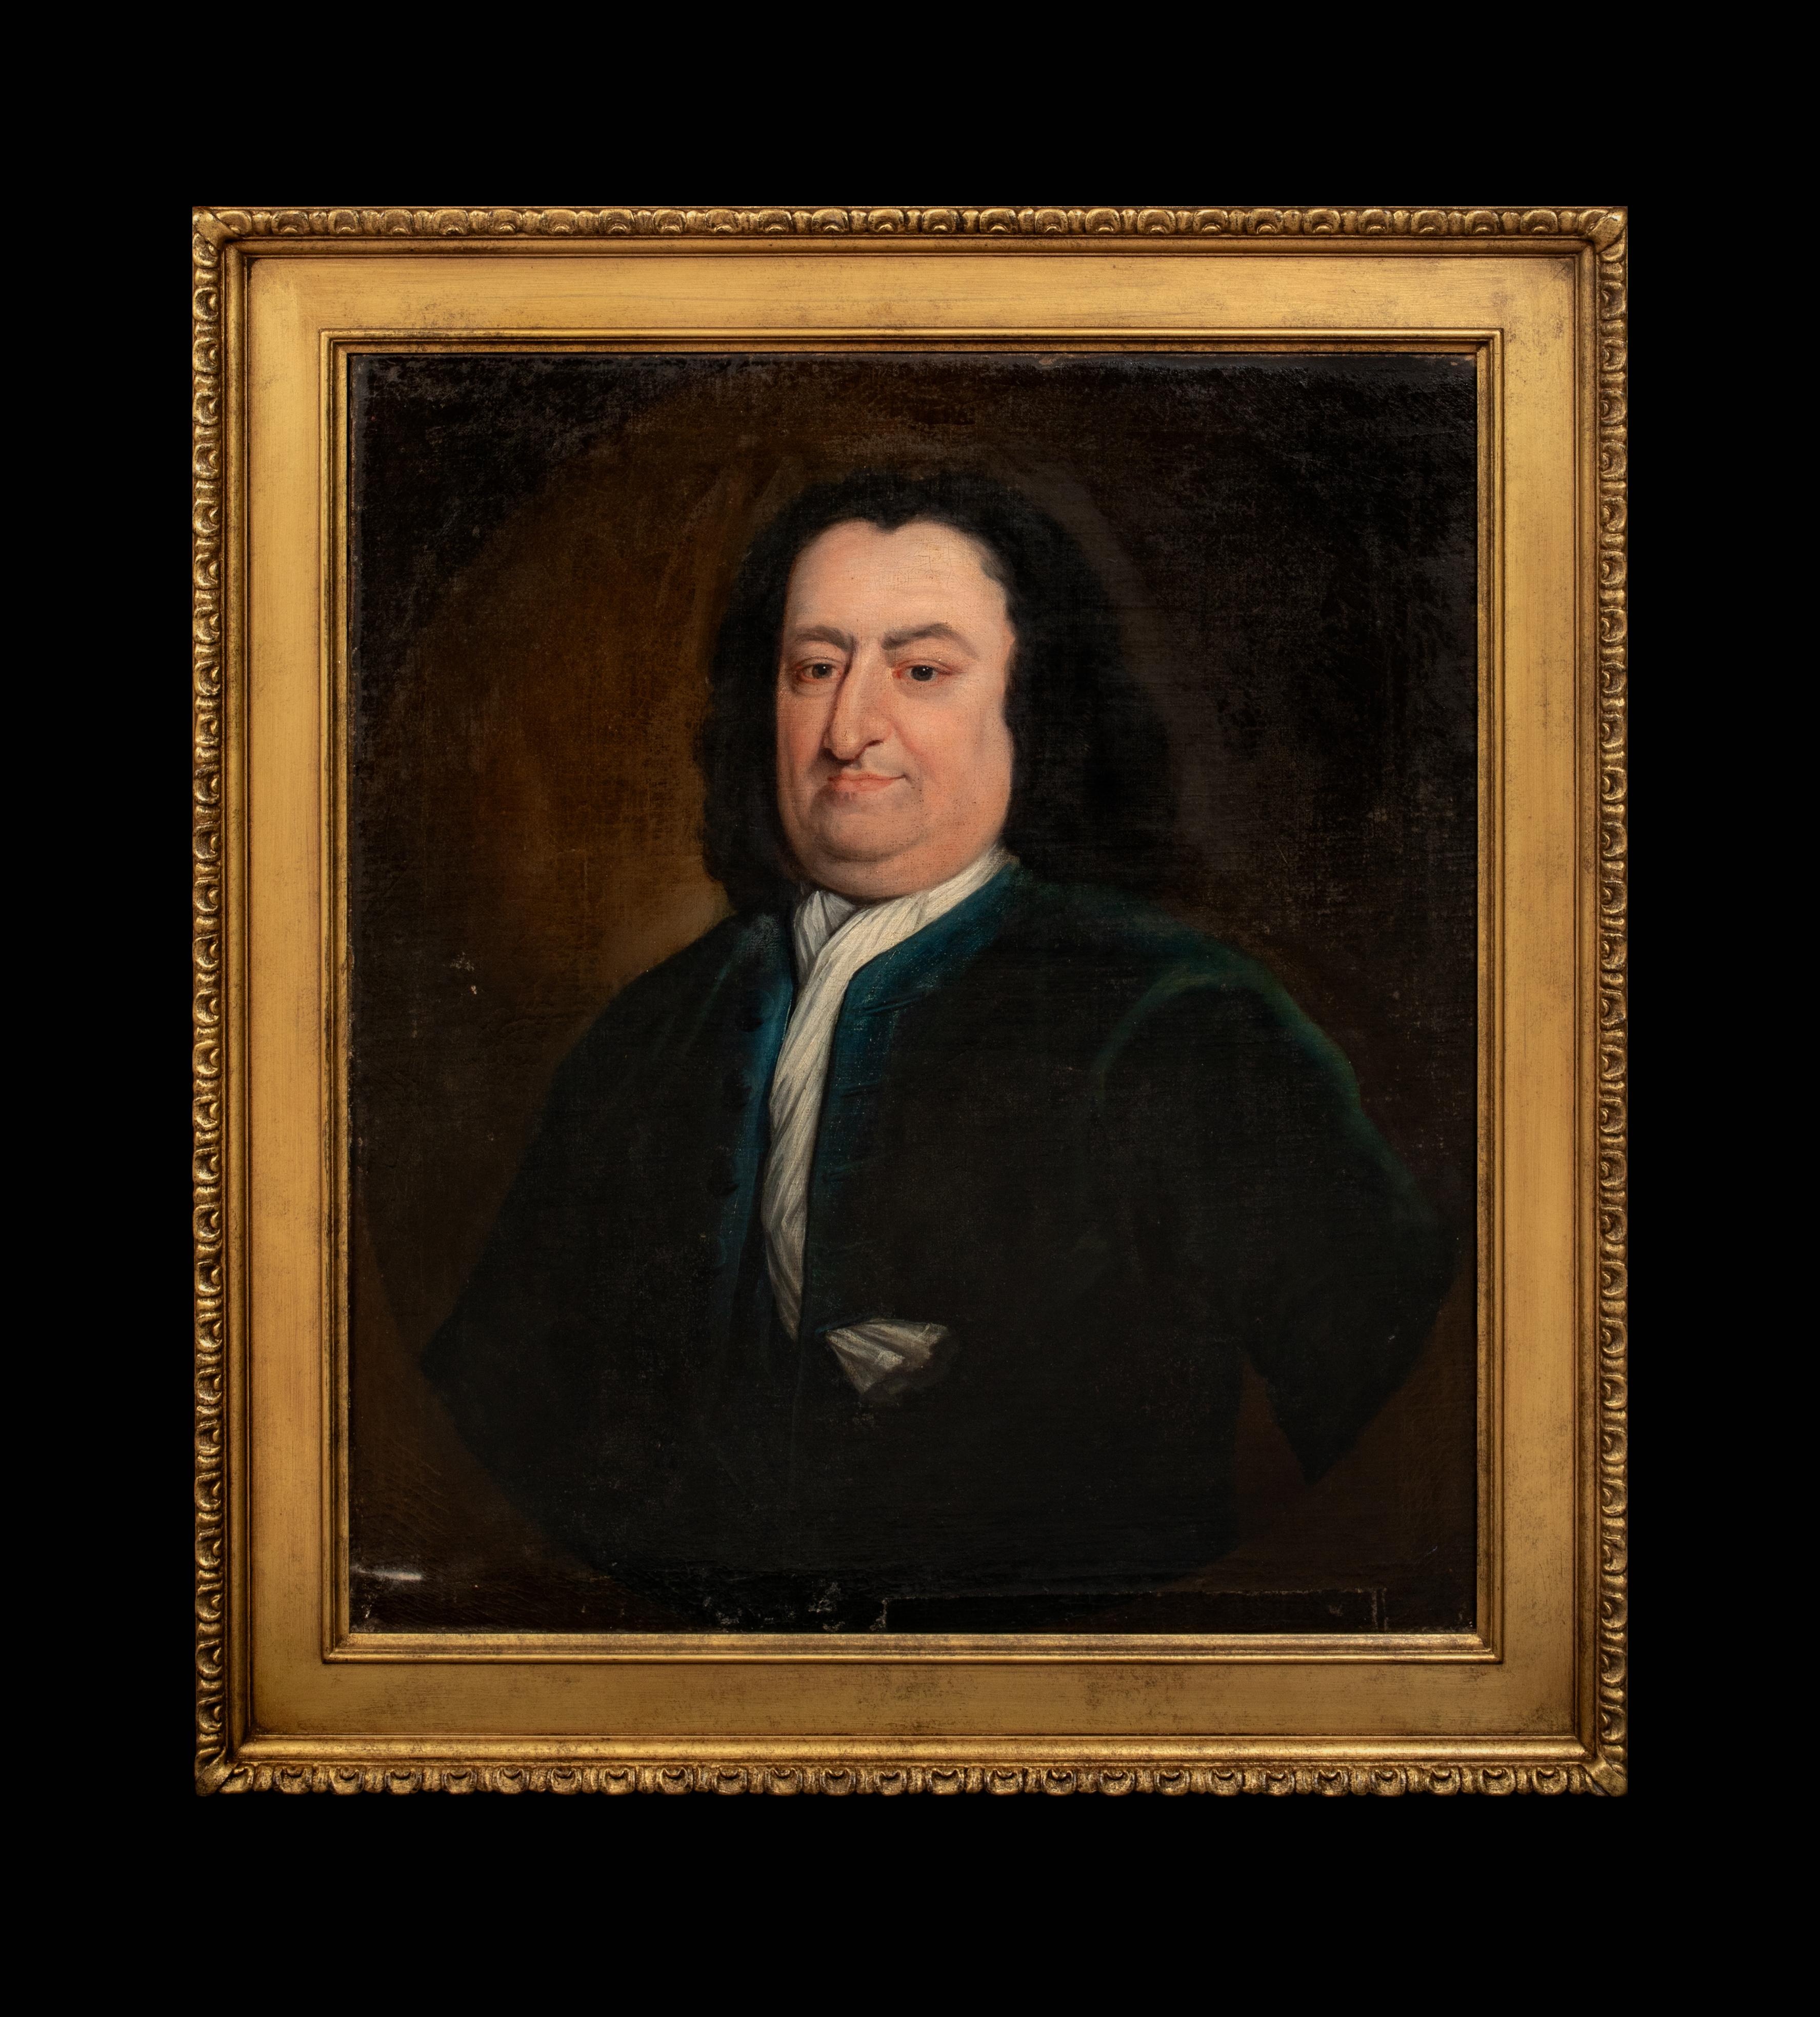 Porträt von William Beekman aus New York, 18. Jahrhundert   Amerikanische Schule – Painting von Unknown